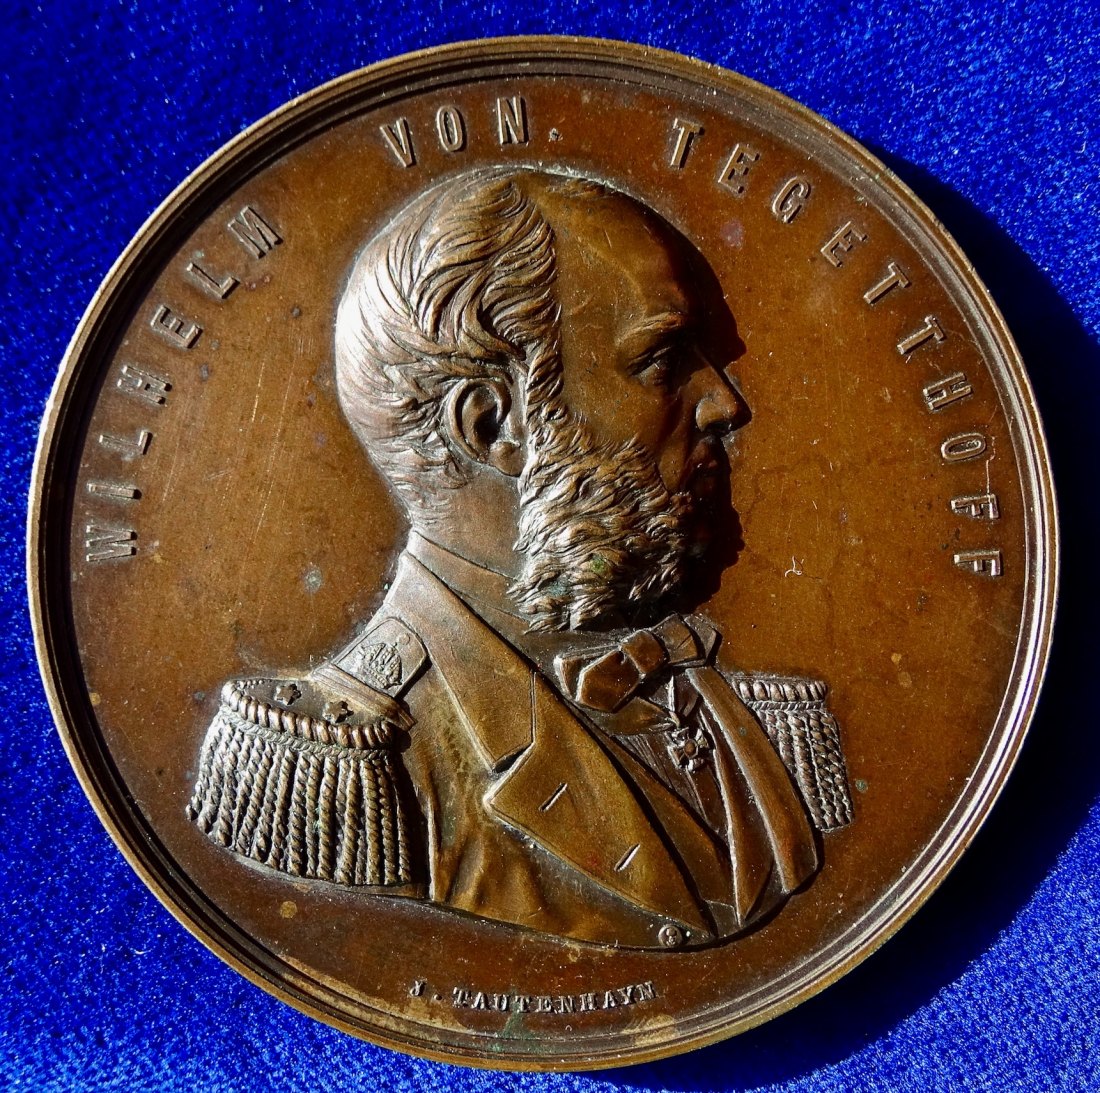  Pola, Österreich-Ungarn, heute Pula in Kroatien, Medaille 1877 zur Errichtung des Tegetthoff Denkmal   